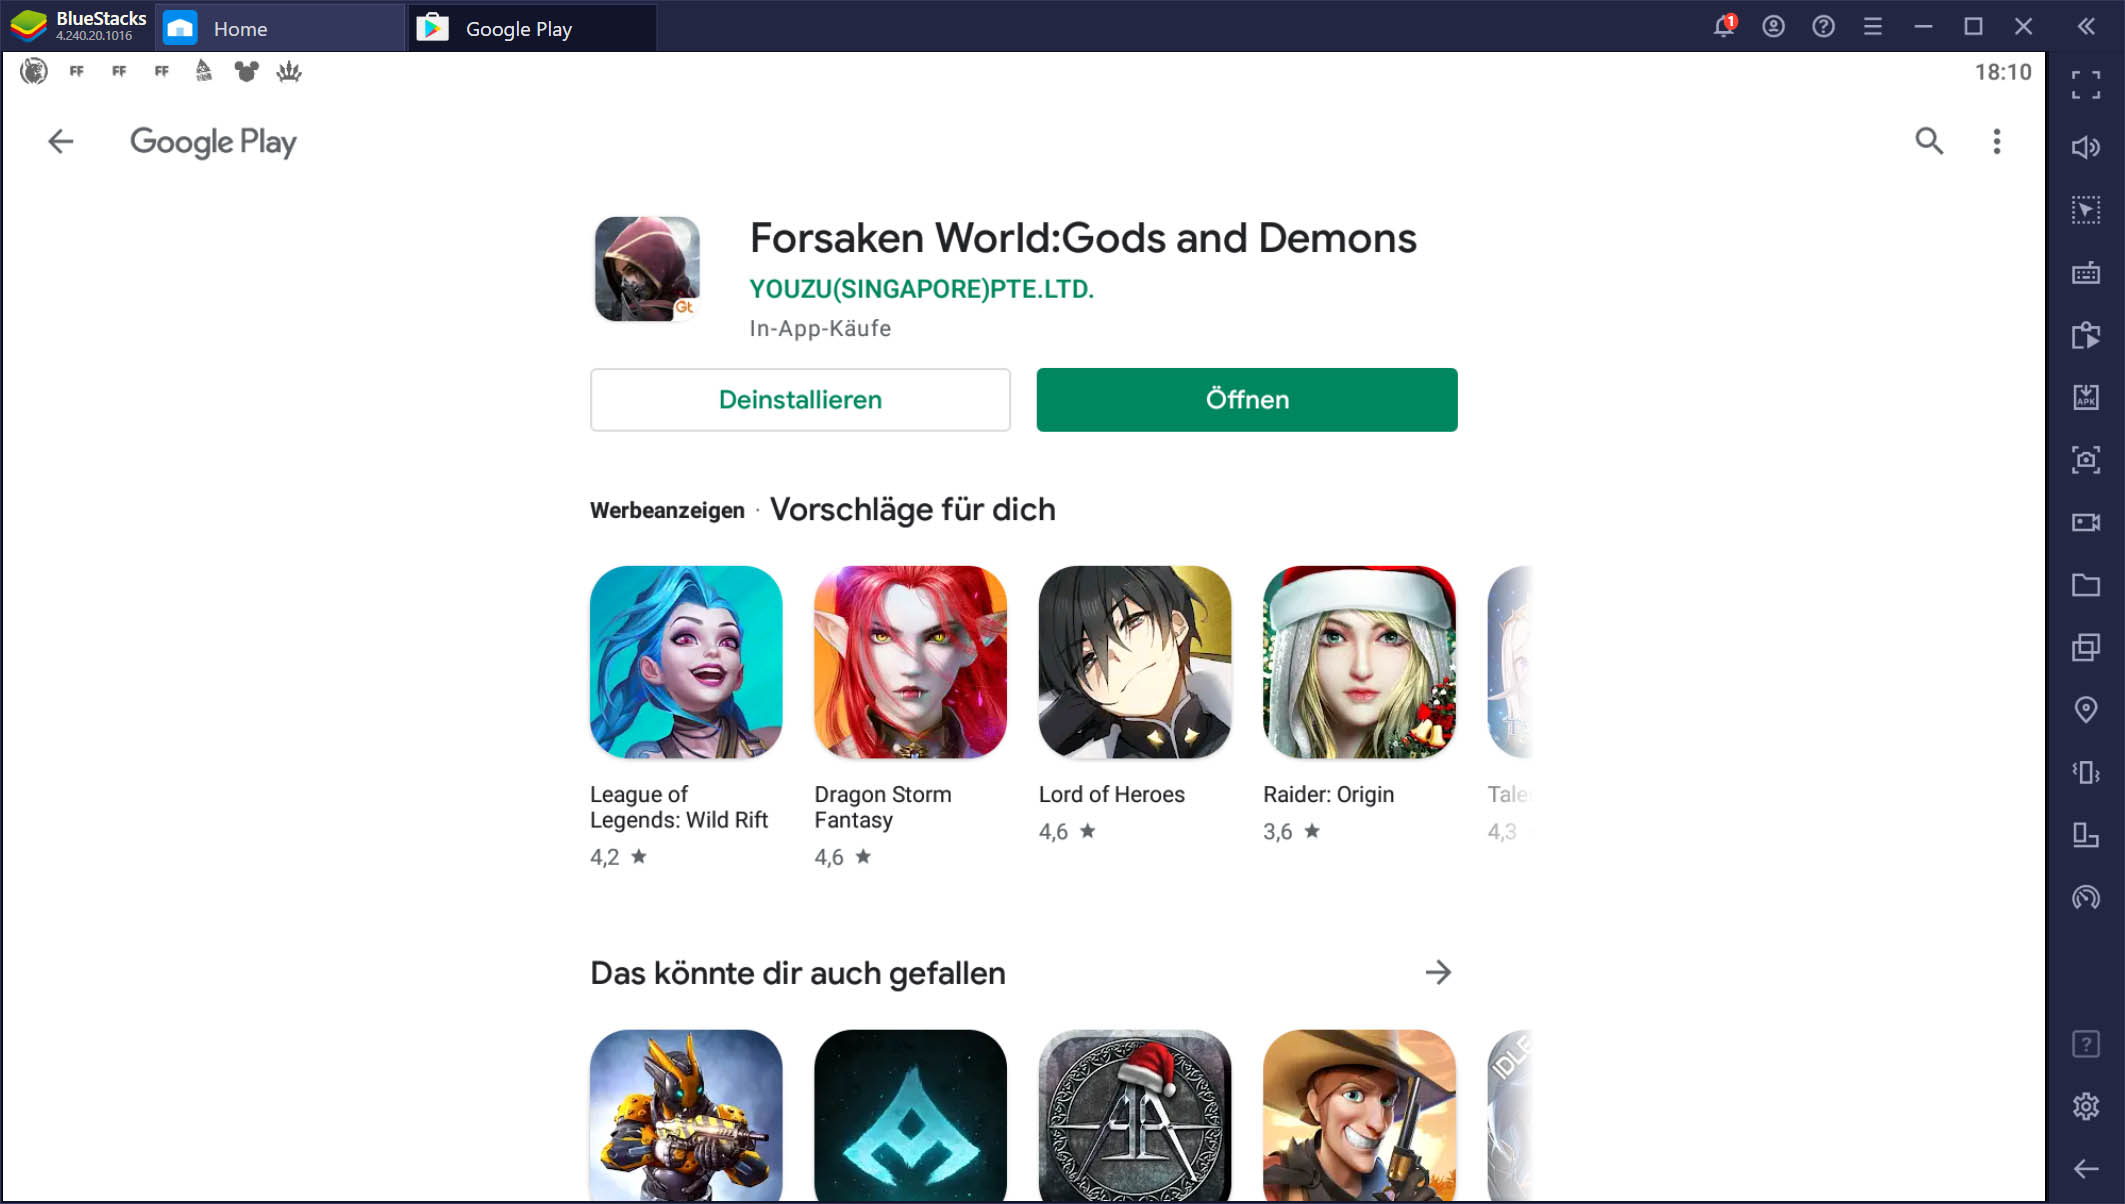 Forsaken World: Gods and Demons auf dem PC - Jetzt verfügbar mit BlueStacks!